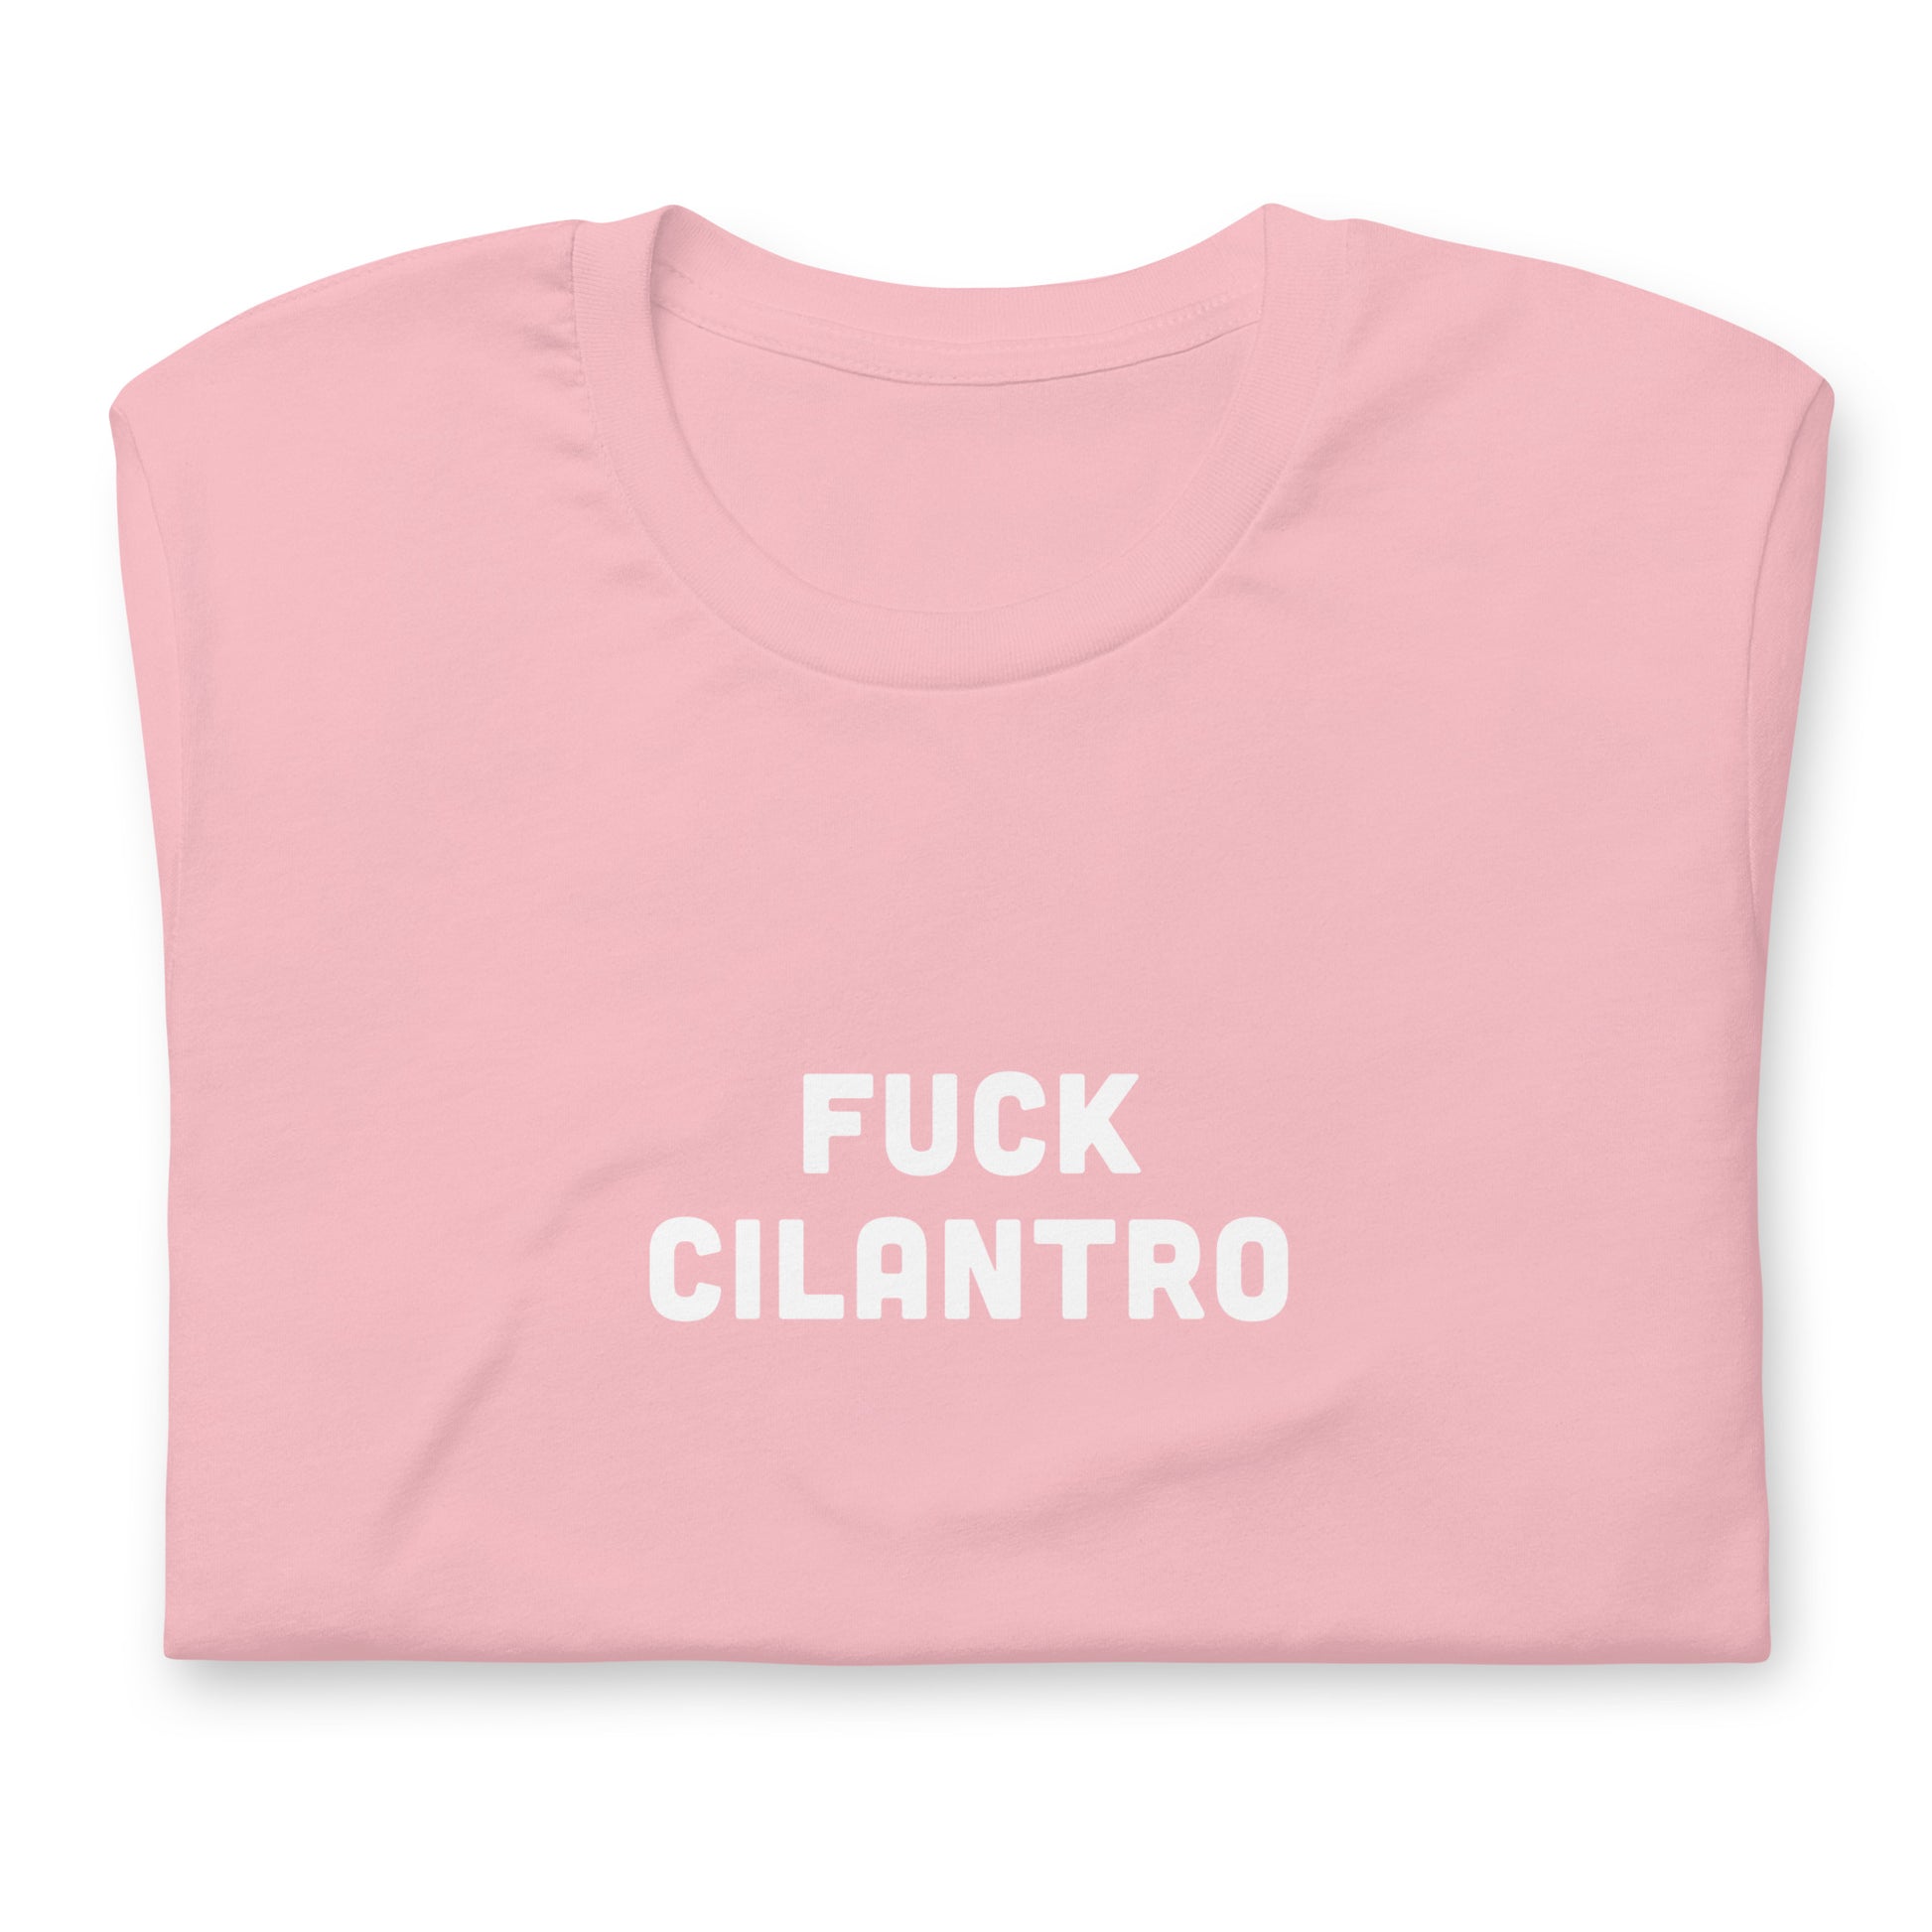 Fuck Cilantro t-shirt  2XL Color Forest